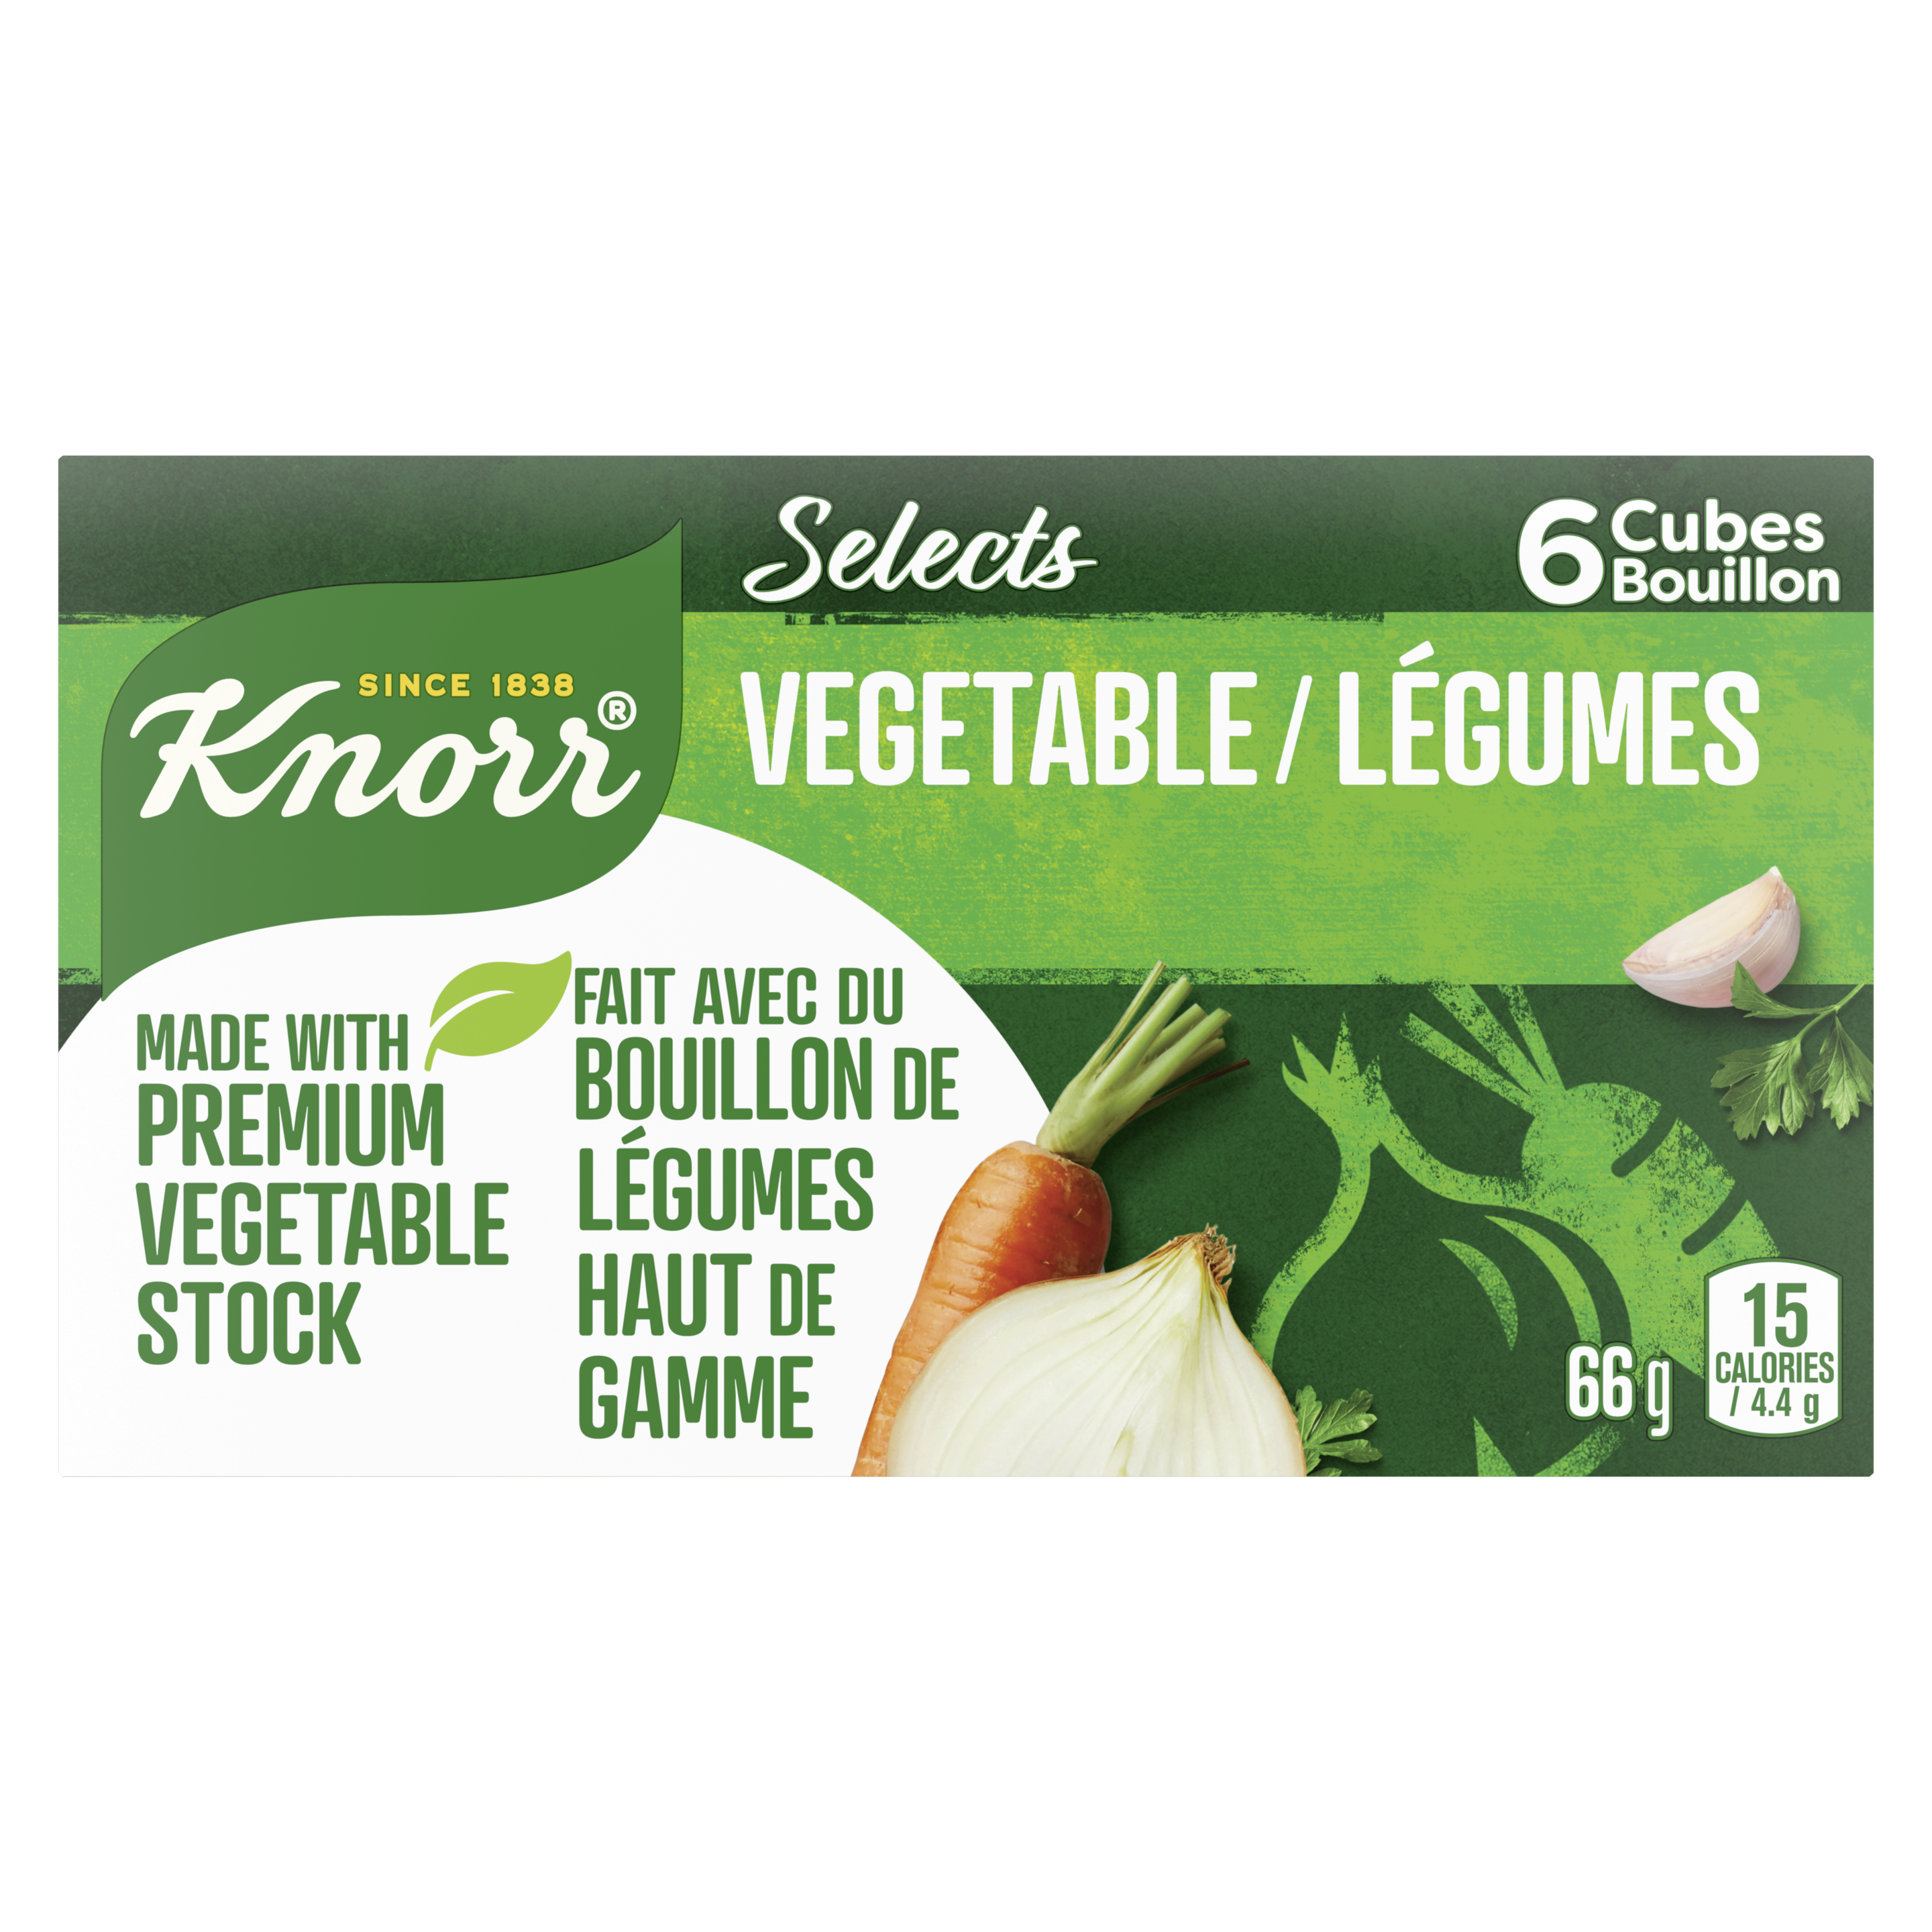 Cubes de bouillon de légumes Knorr SelectsMC